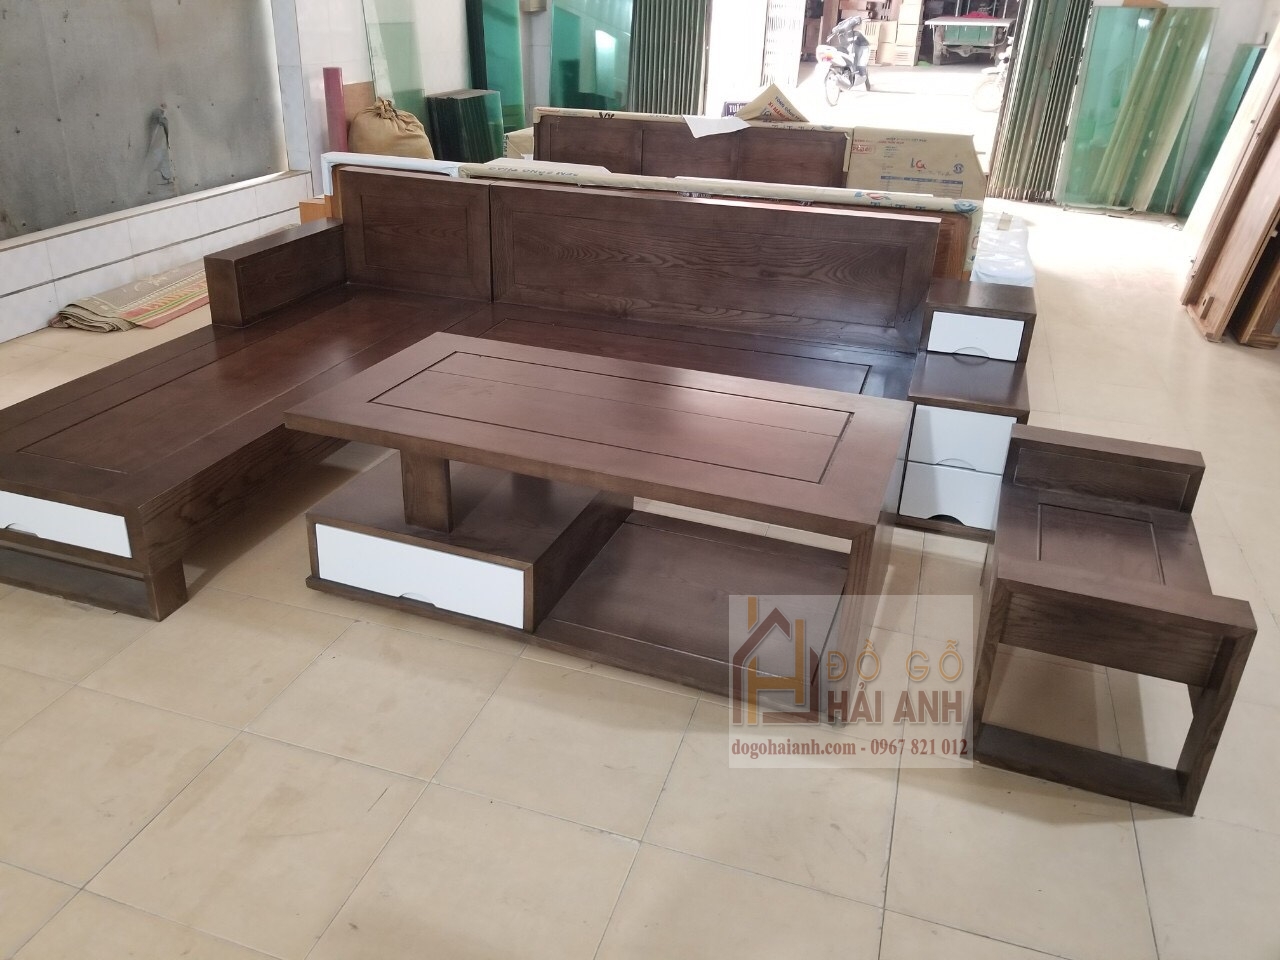 Sofa gỗ góc giá rẻ tại Hà Nội. Hotline: 0967821012